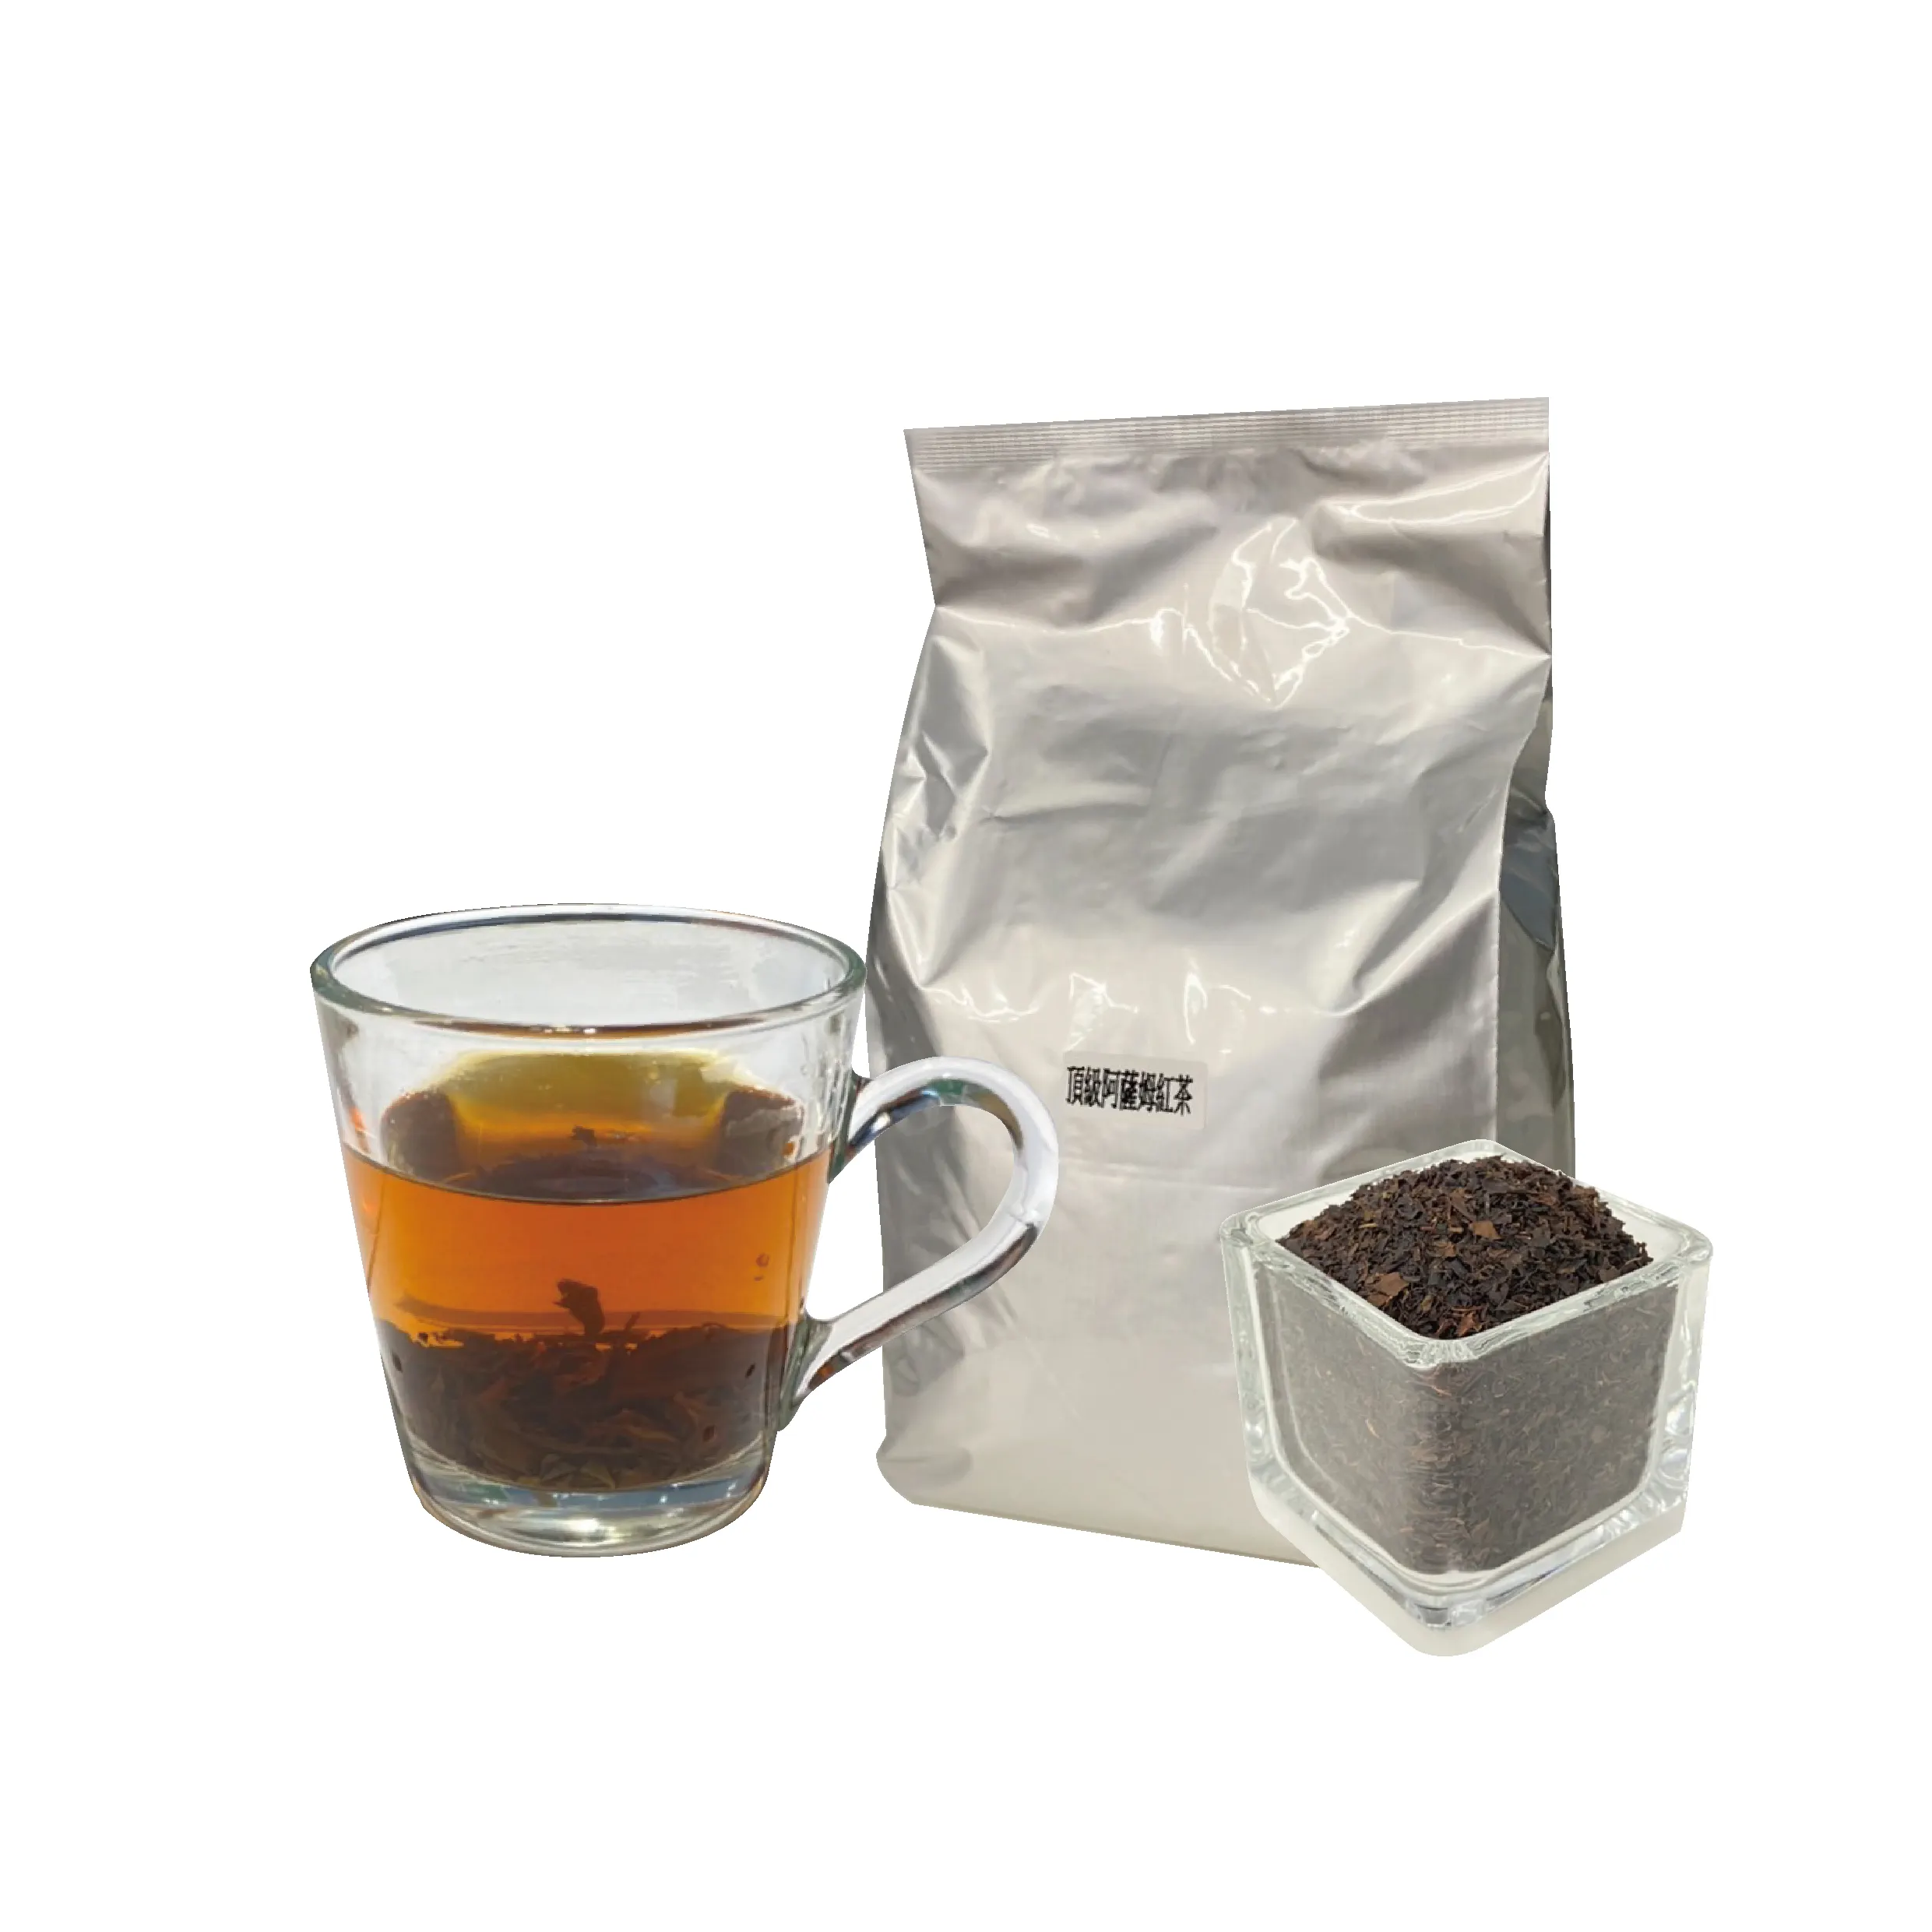 Wholesale Japanese USDA Approved Blend Uji Matcha Tea Bag For Cafe